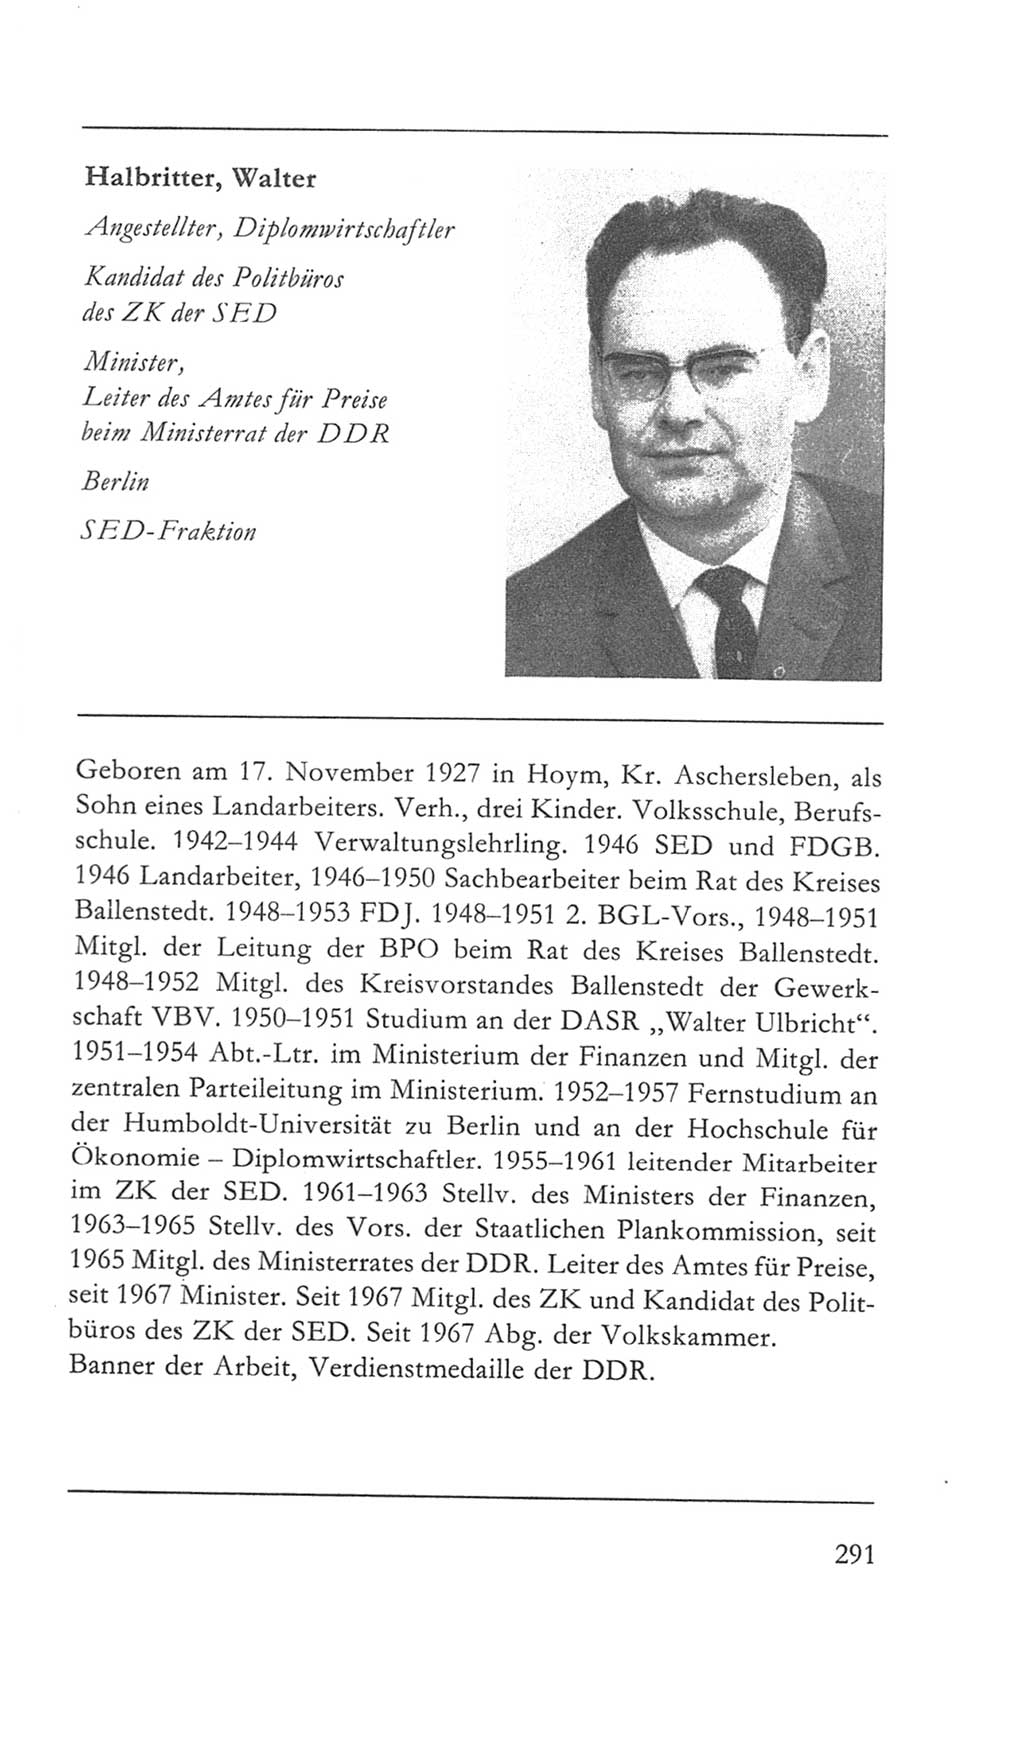 Volkskammer (VK) der Deutschen Demokratischen Republik (DDR) 5. Wahlperiode 1967-1971, Seite 291 (VK. DDR 5. WP. 1967-1971, S. 291)